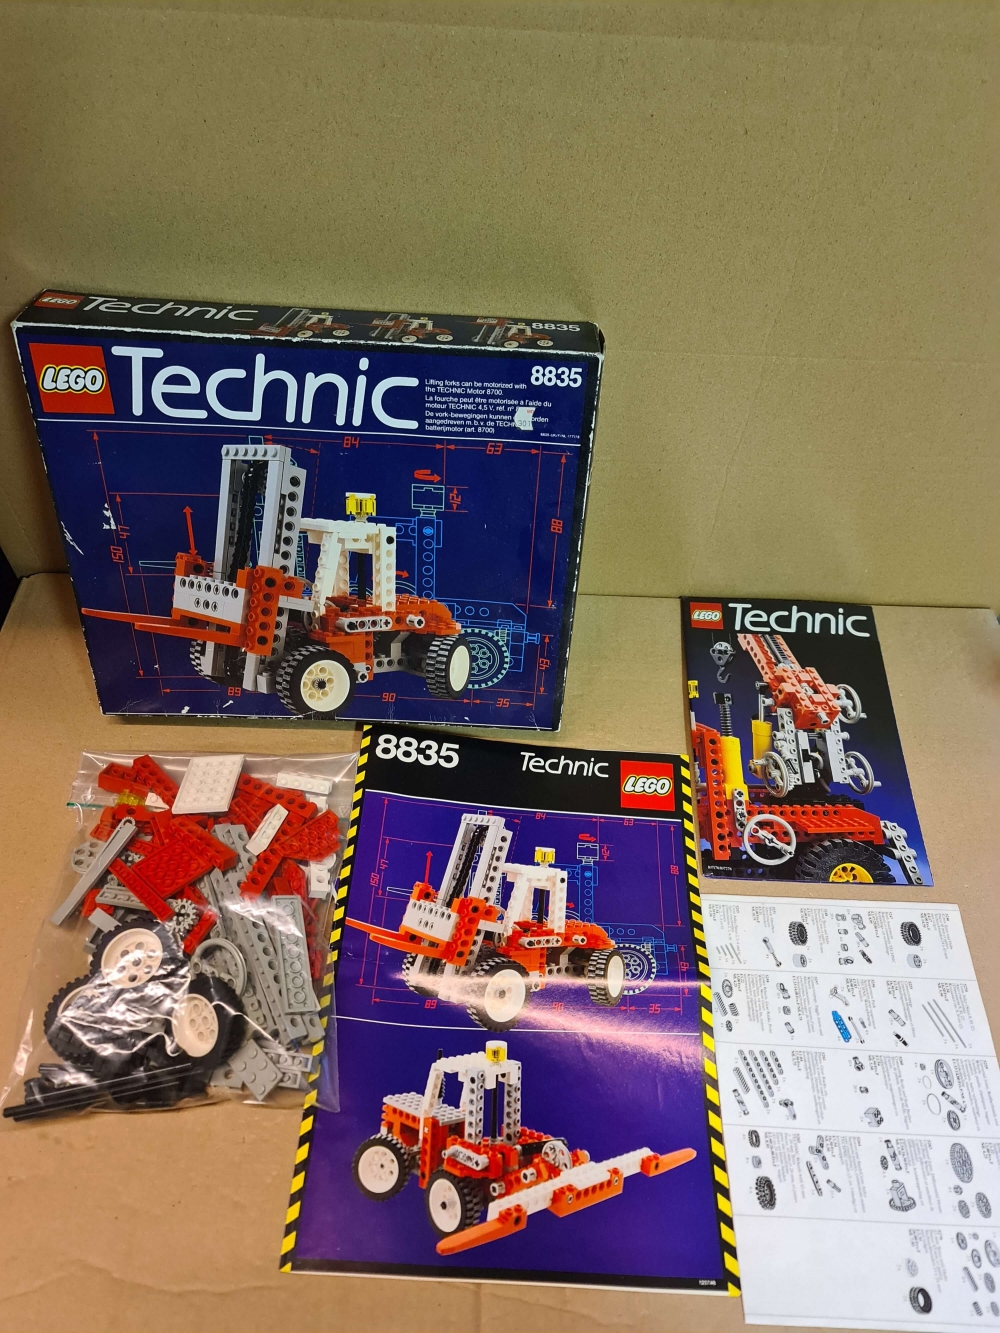 Sett 8835 fra Lego Technic serien.
Meget pent sett. Komplett med manual og eske
Alle deler for alternative modeller er med.